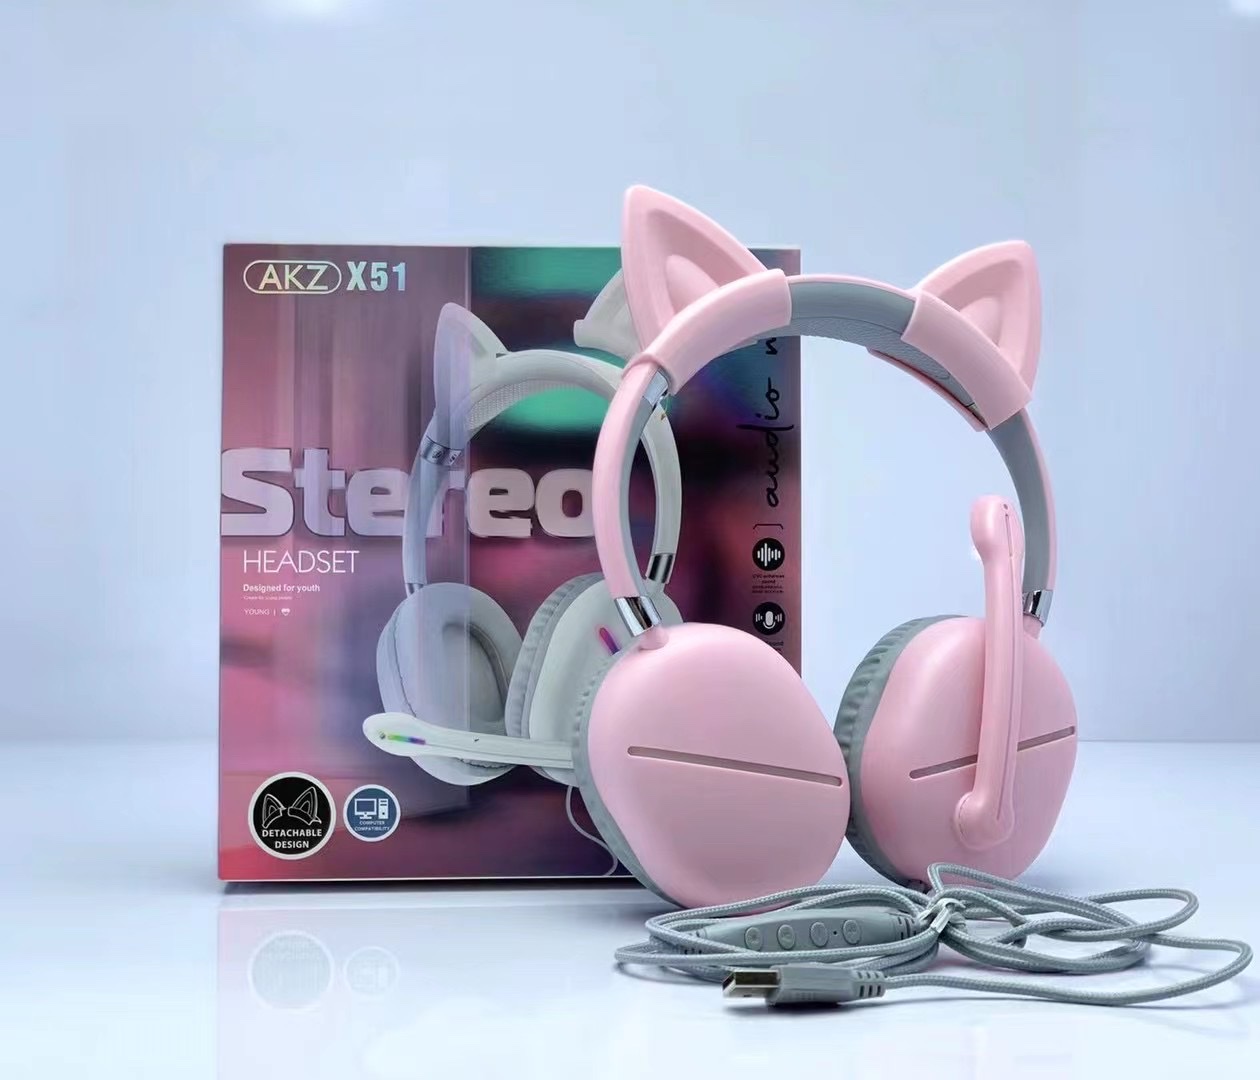 新款AKZ-X51有线游戏耳机猫耳机可拆缷猫耳RGB灯炫彩发光带线耳麦带声卡功能详情图4